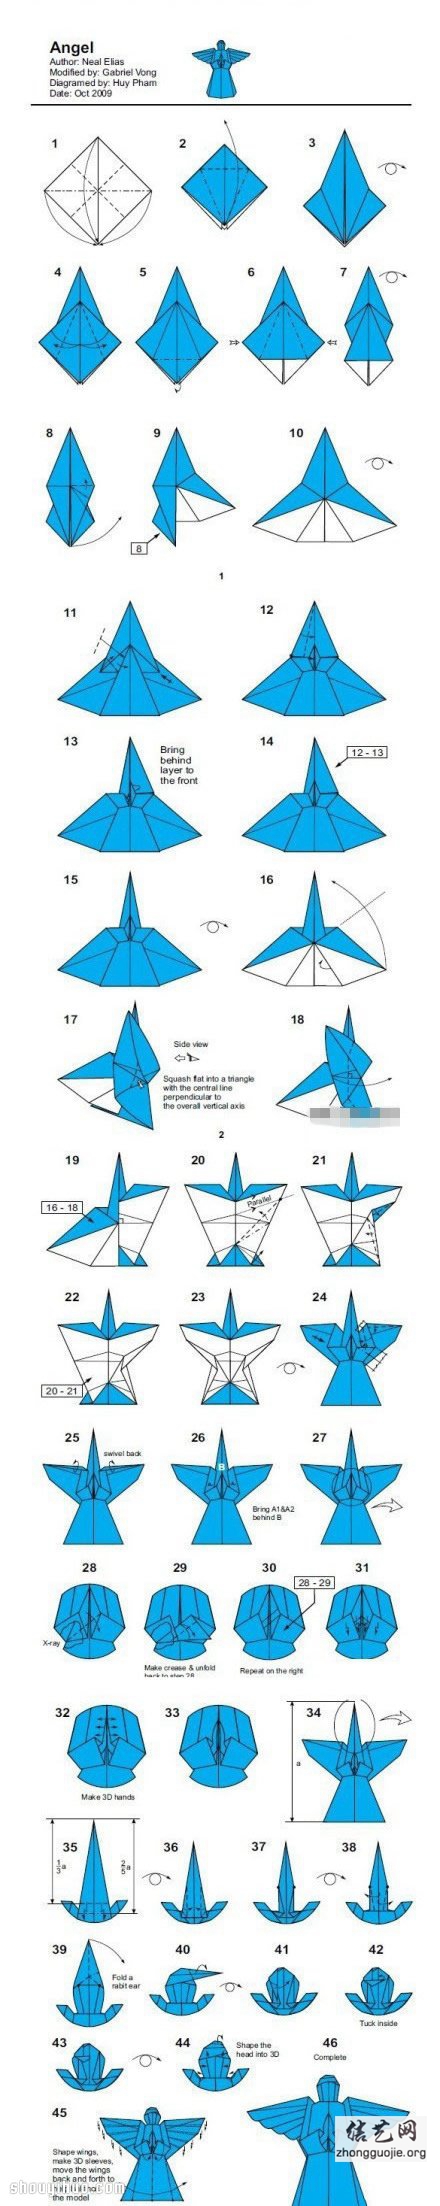 超复杂手工折纸天使的折法步骤图解教程 -  www.shouyihuo.net